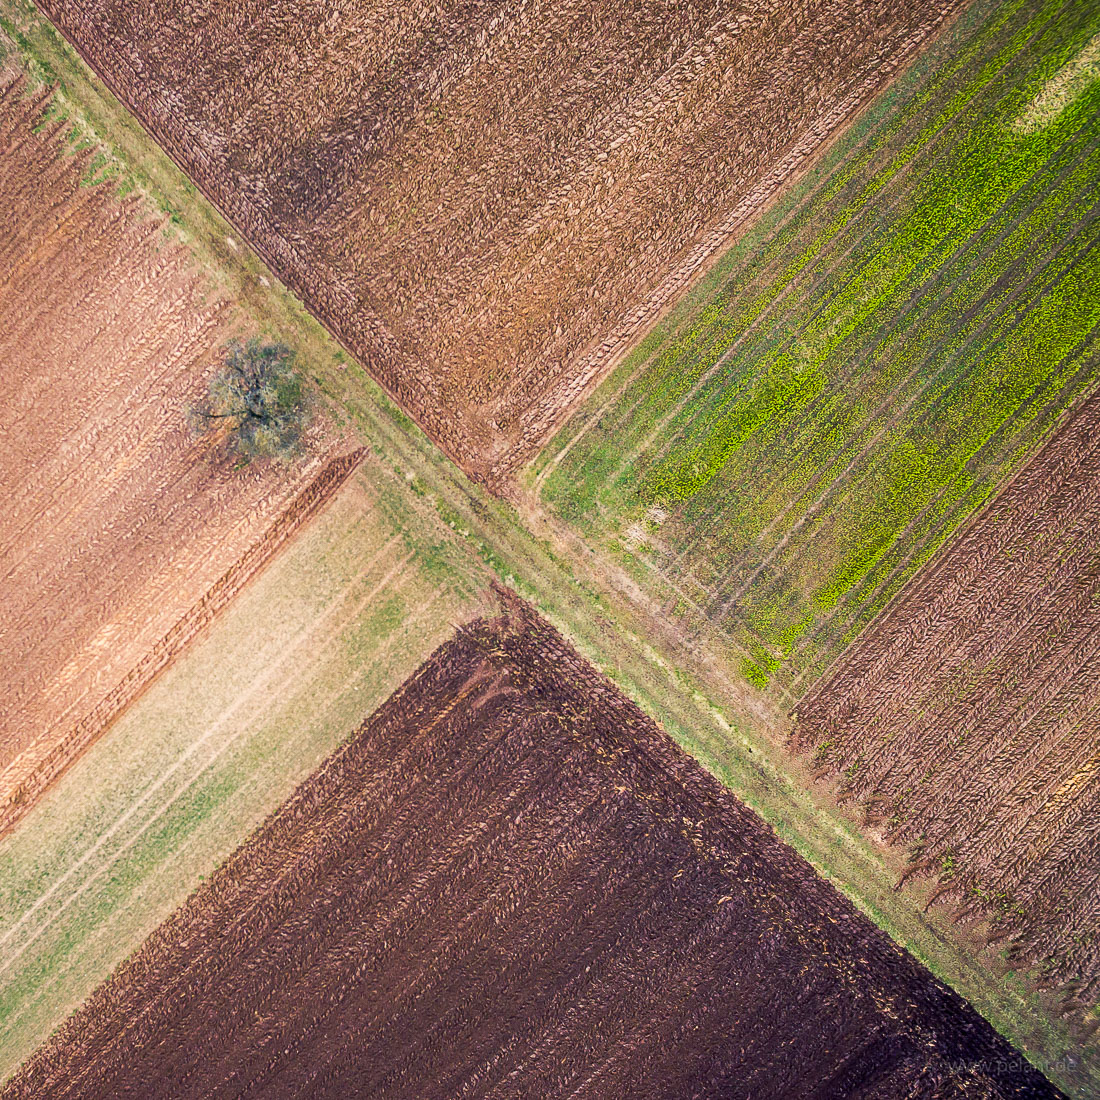 Luftaufnahme von Feldern in winterlichen Farben Anfang Februar mit diagonal verlaufendem Feldweg